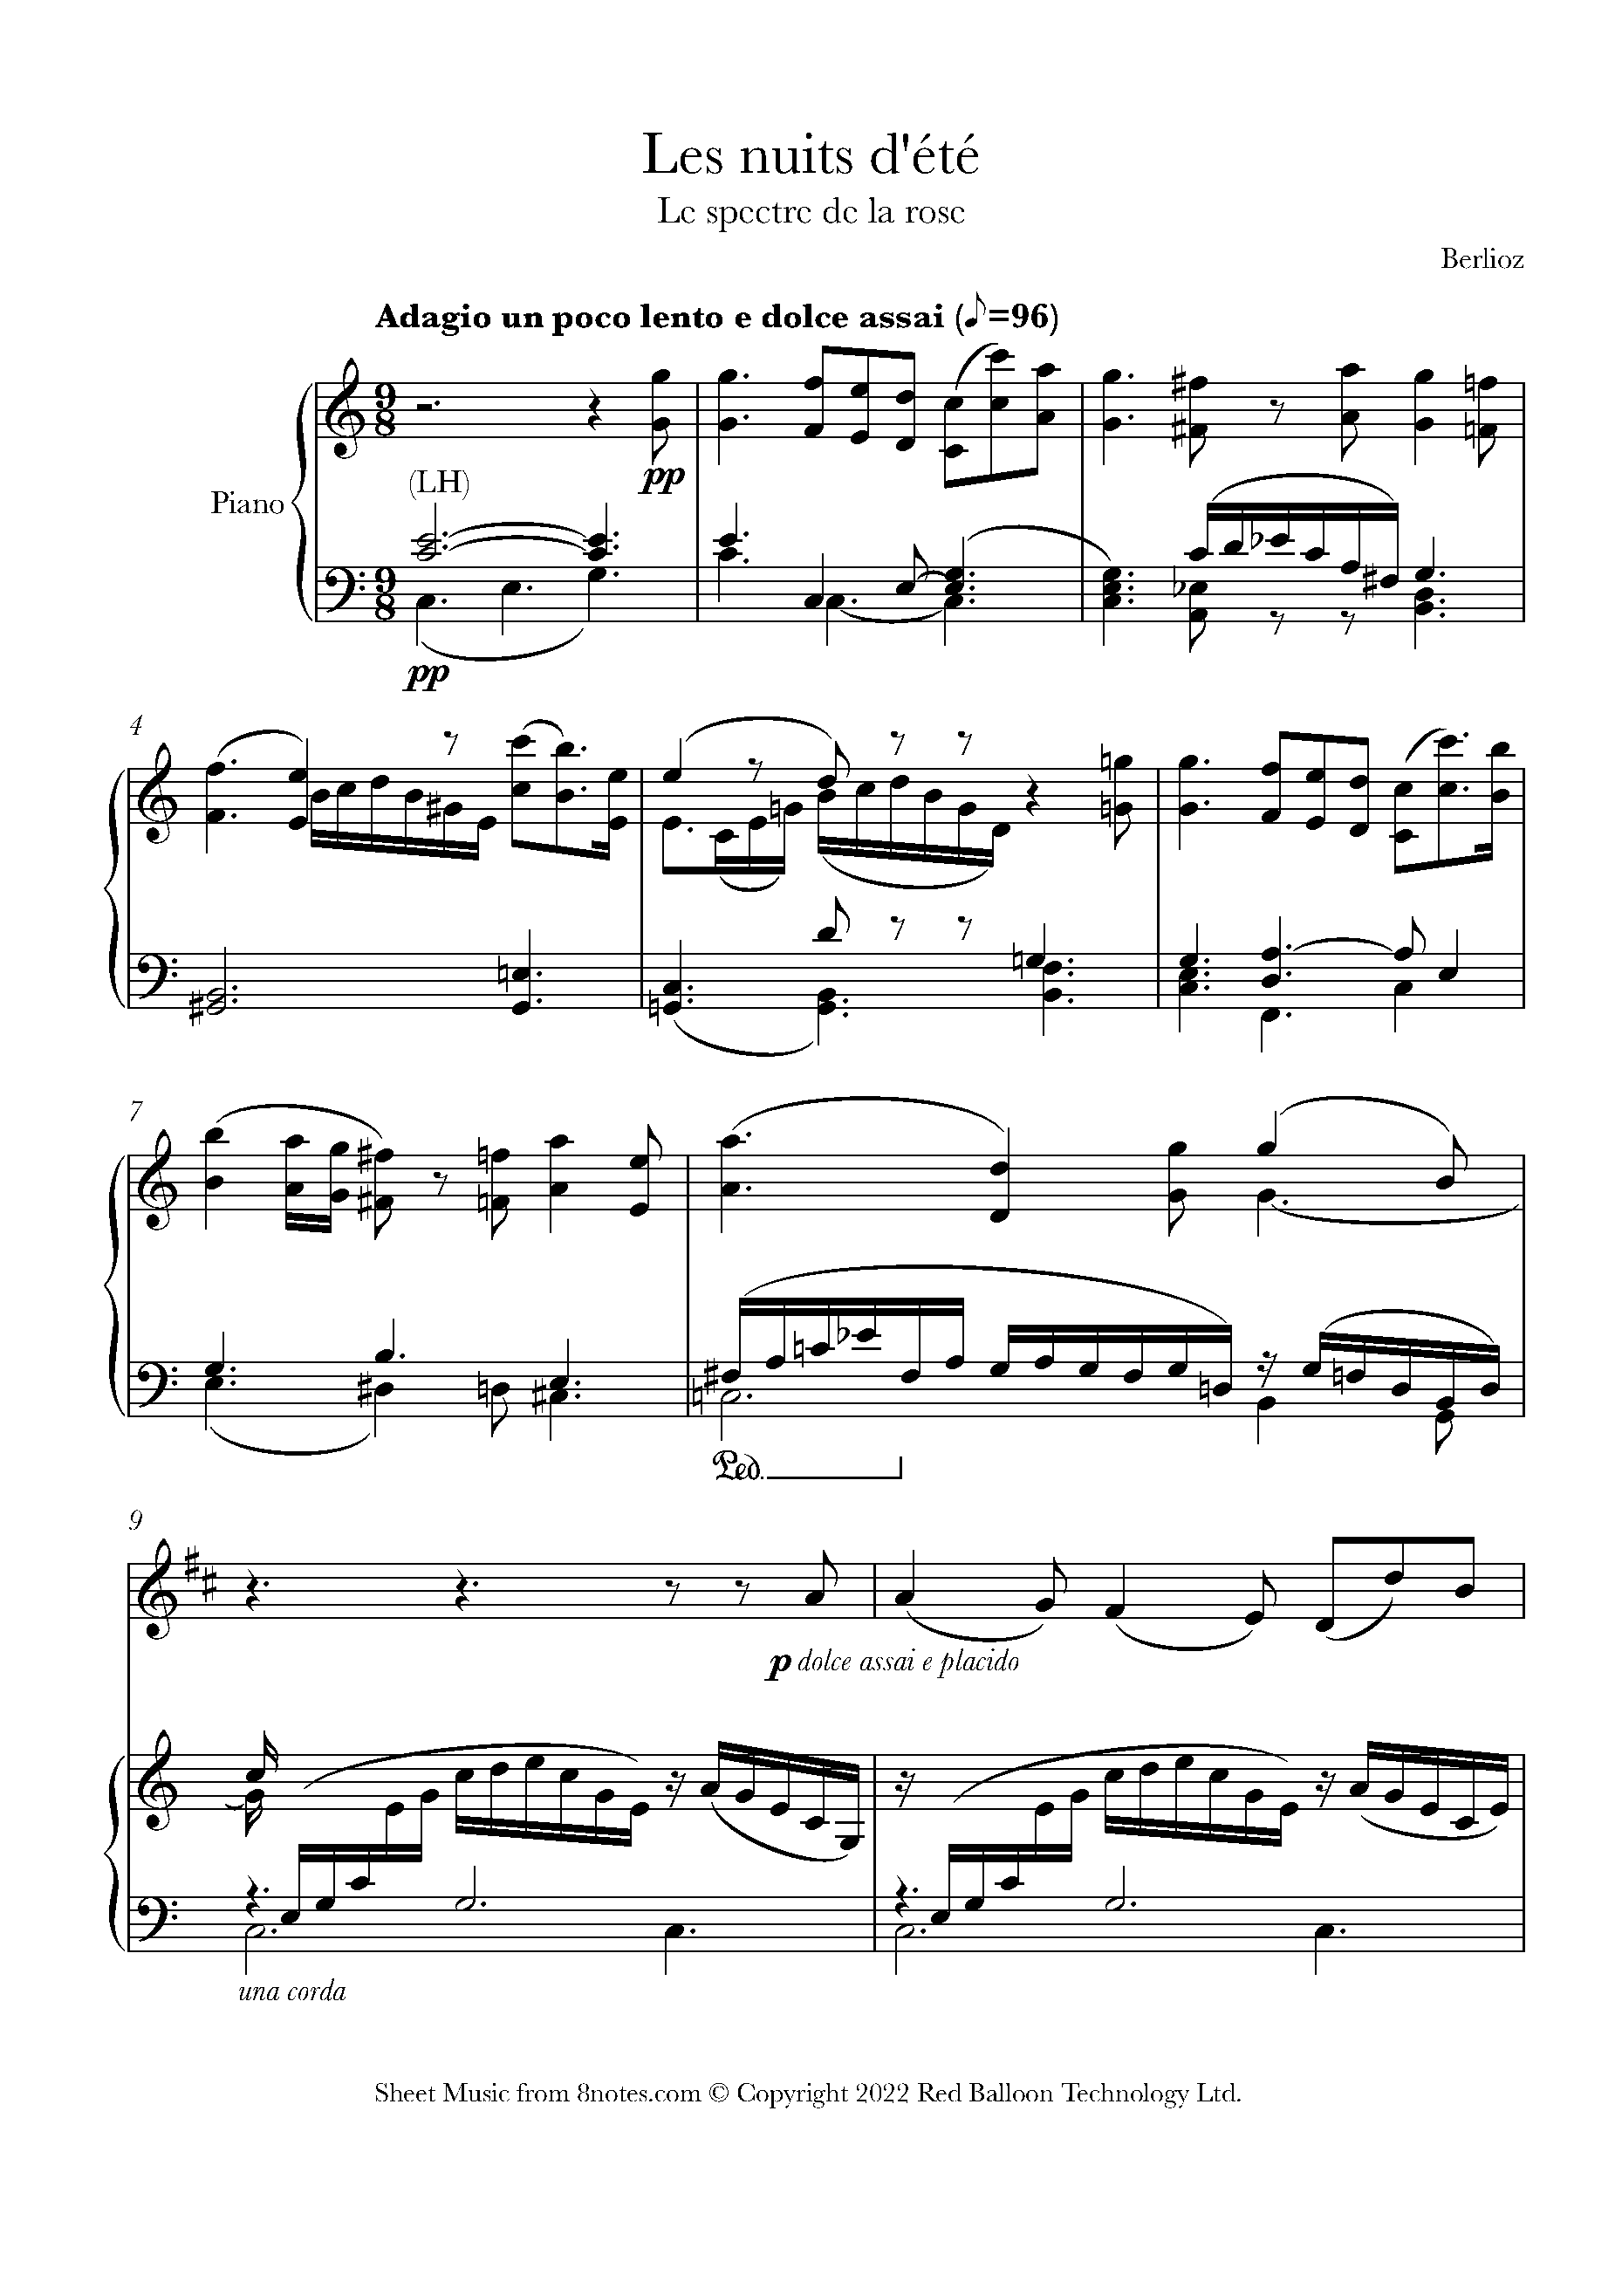 Berlioz - Les nuits d'ete: Le spectre de la rose Sheet music for ...